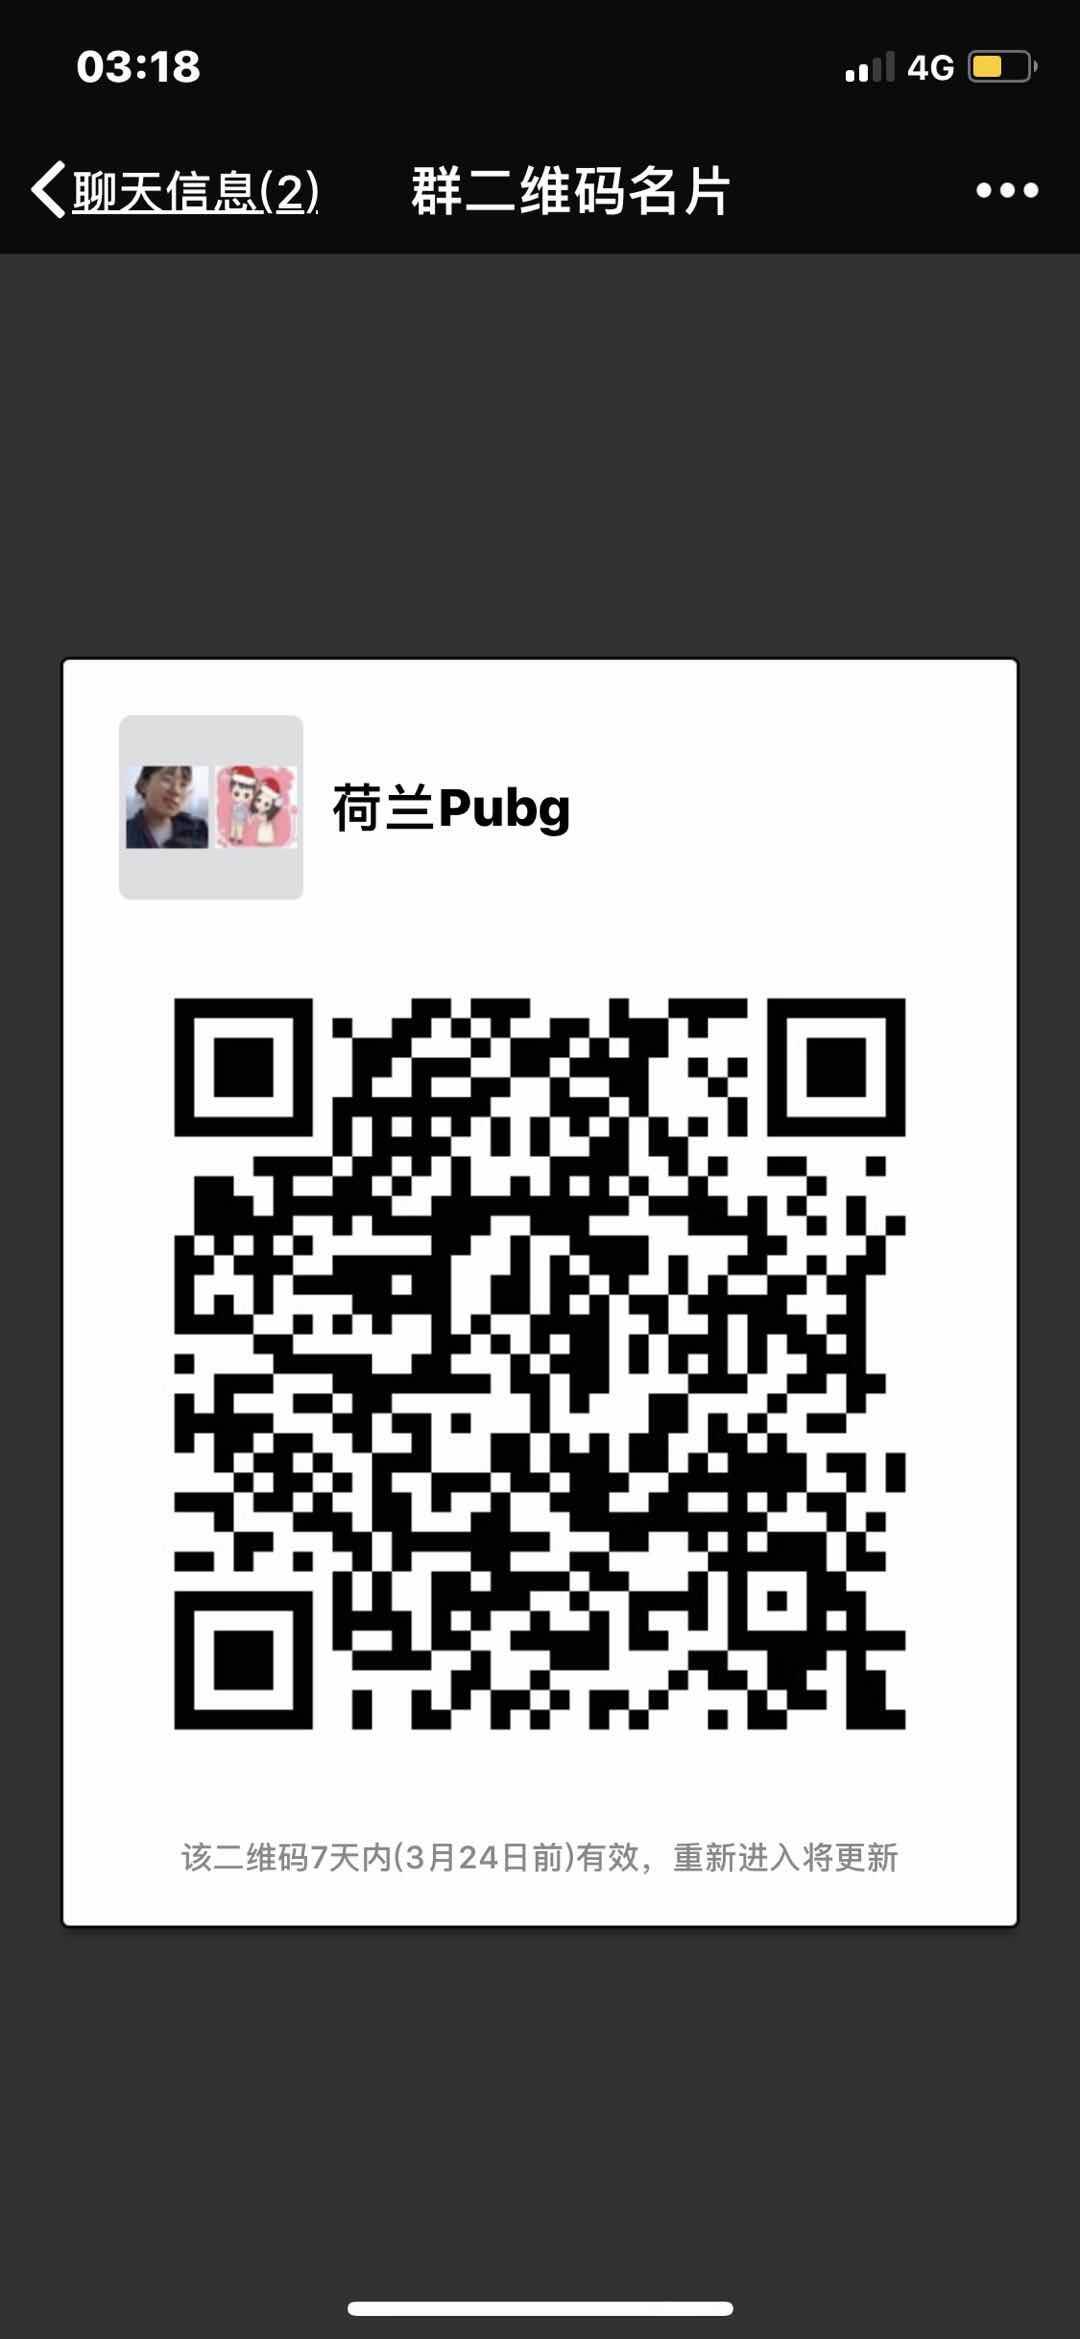 WeChat Image_20180317031950.jpg